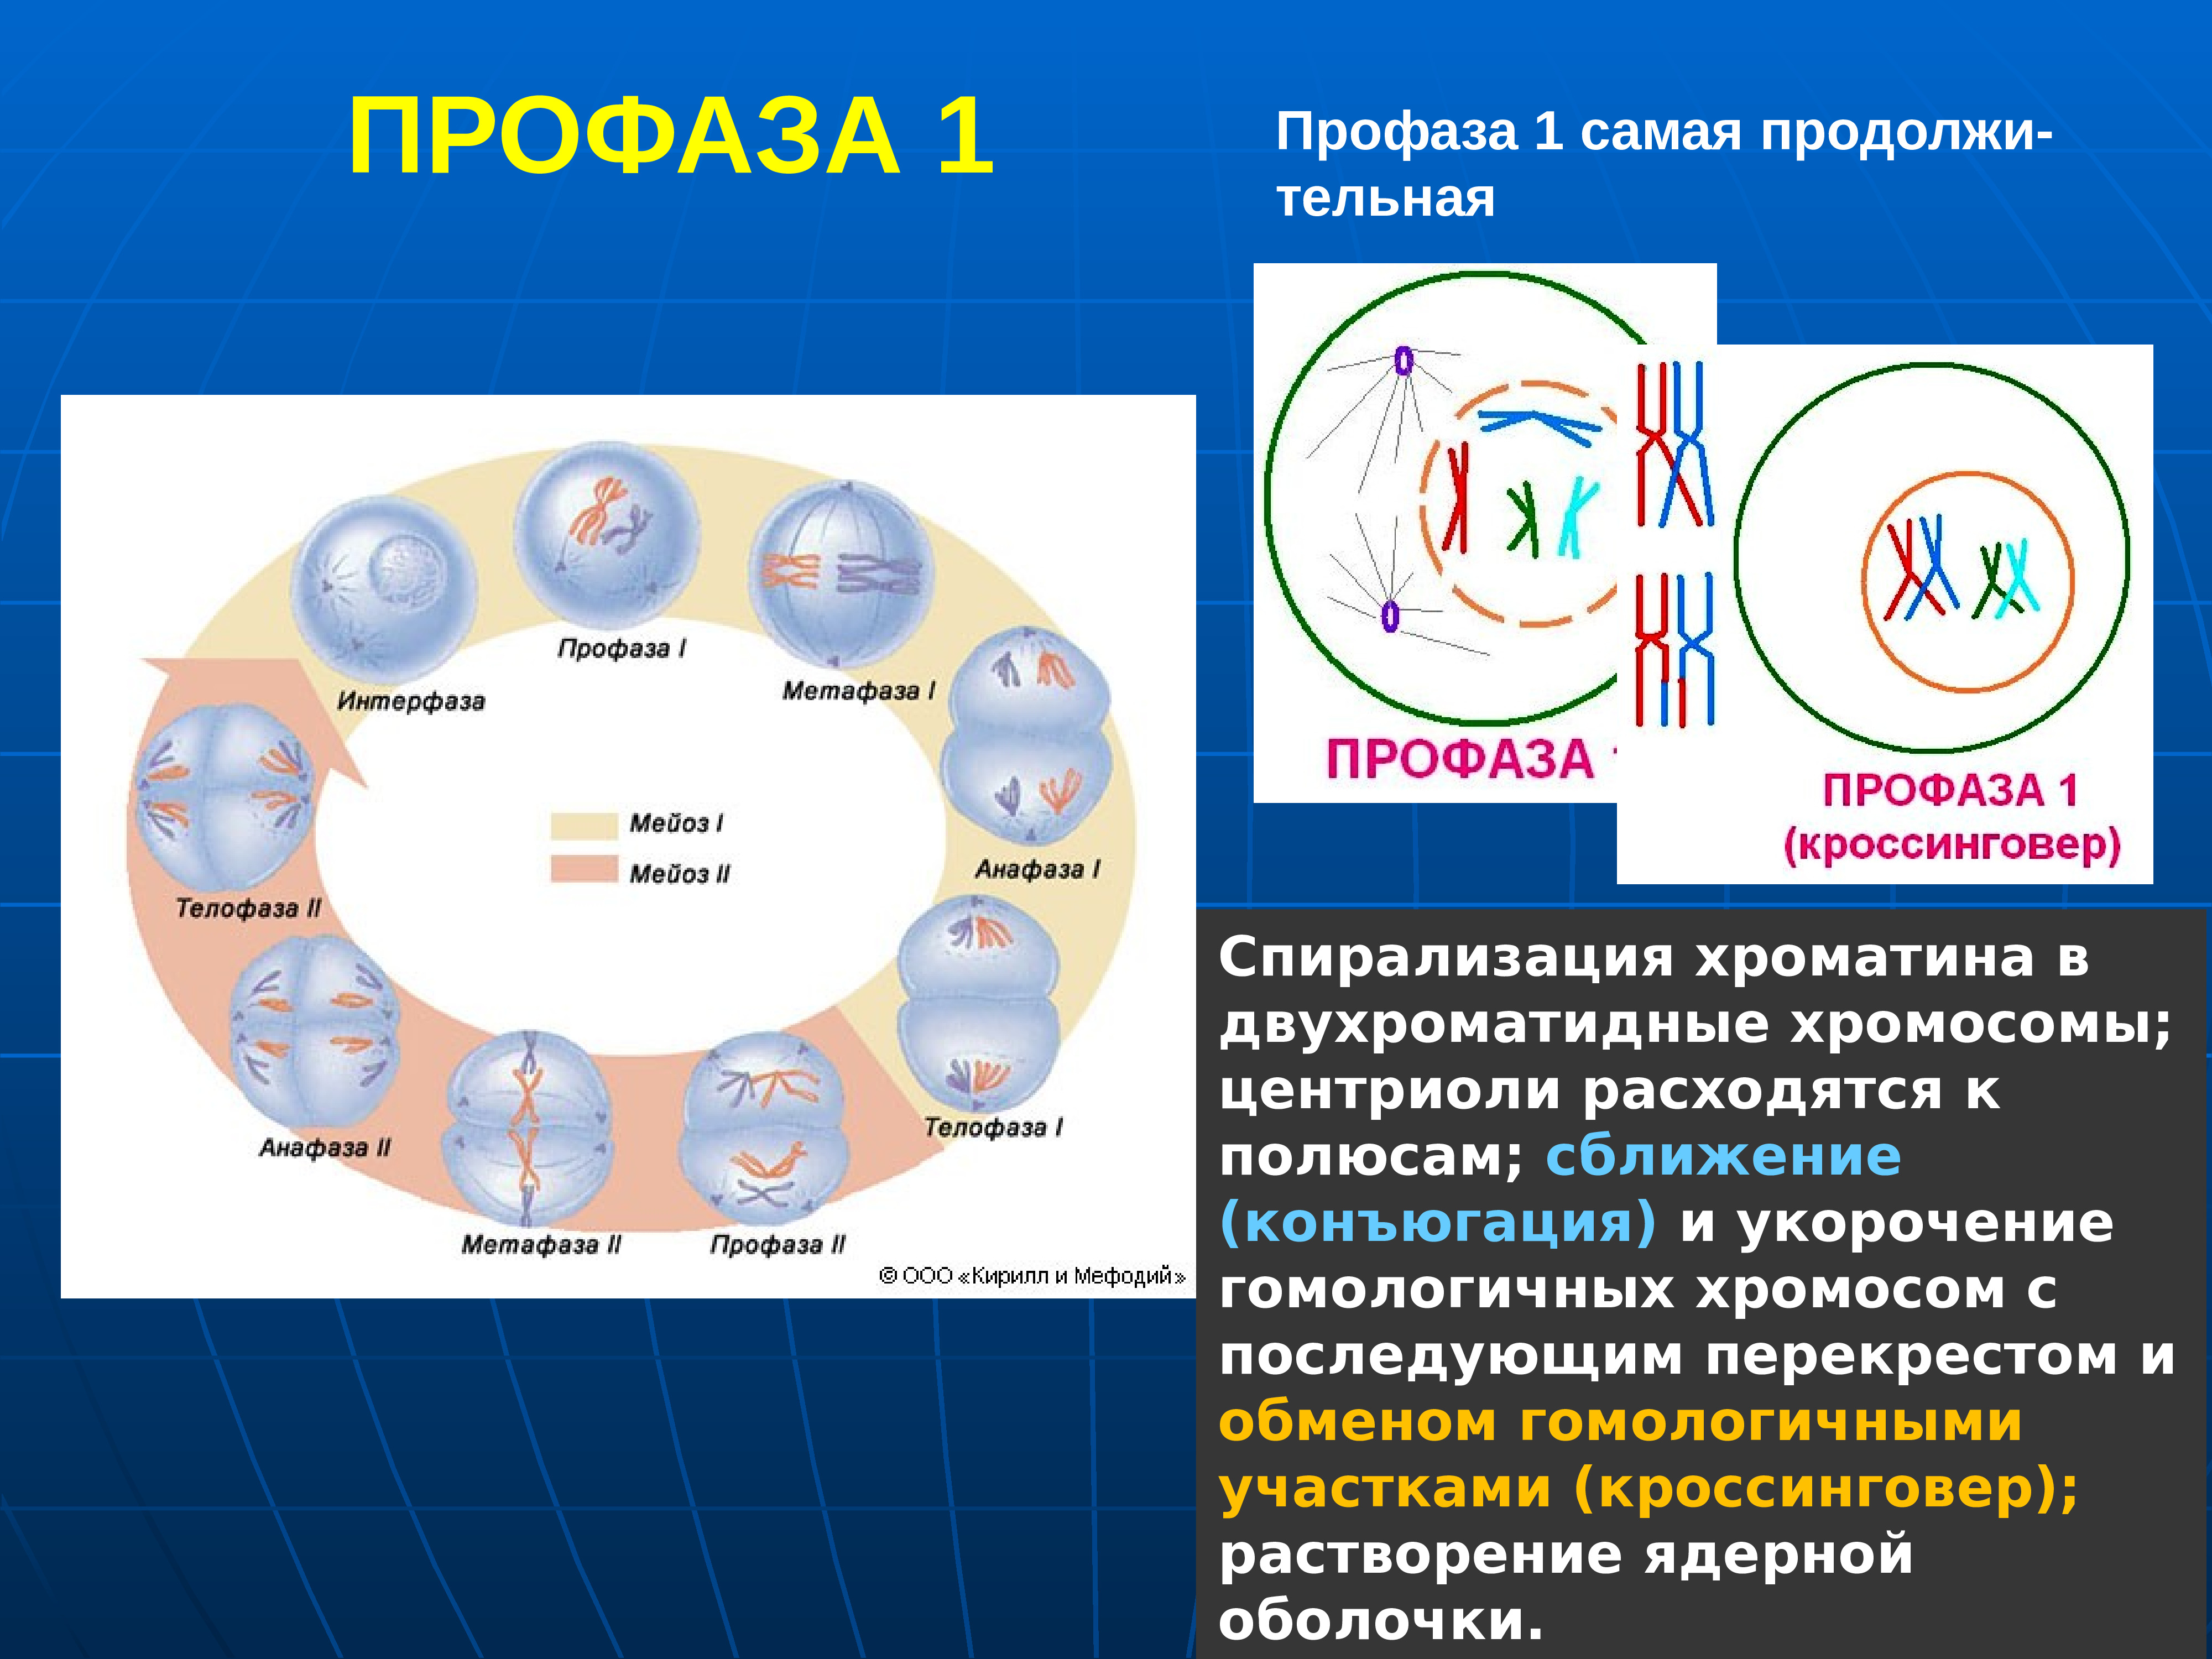 Спирализация двухроматидных хромосом. Стадии профазы 1 мейоза 1. Интерфаза мейоза 1. Мейоз интерфаза 1 и профаза. Профаза мейоза конъюгация.